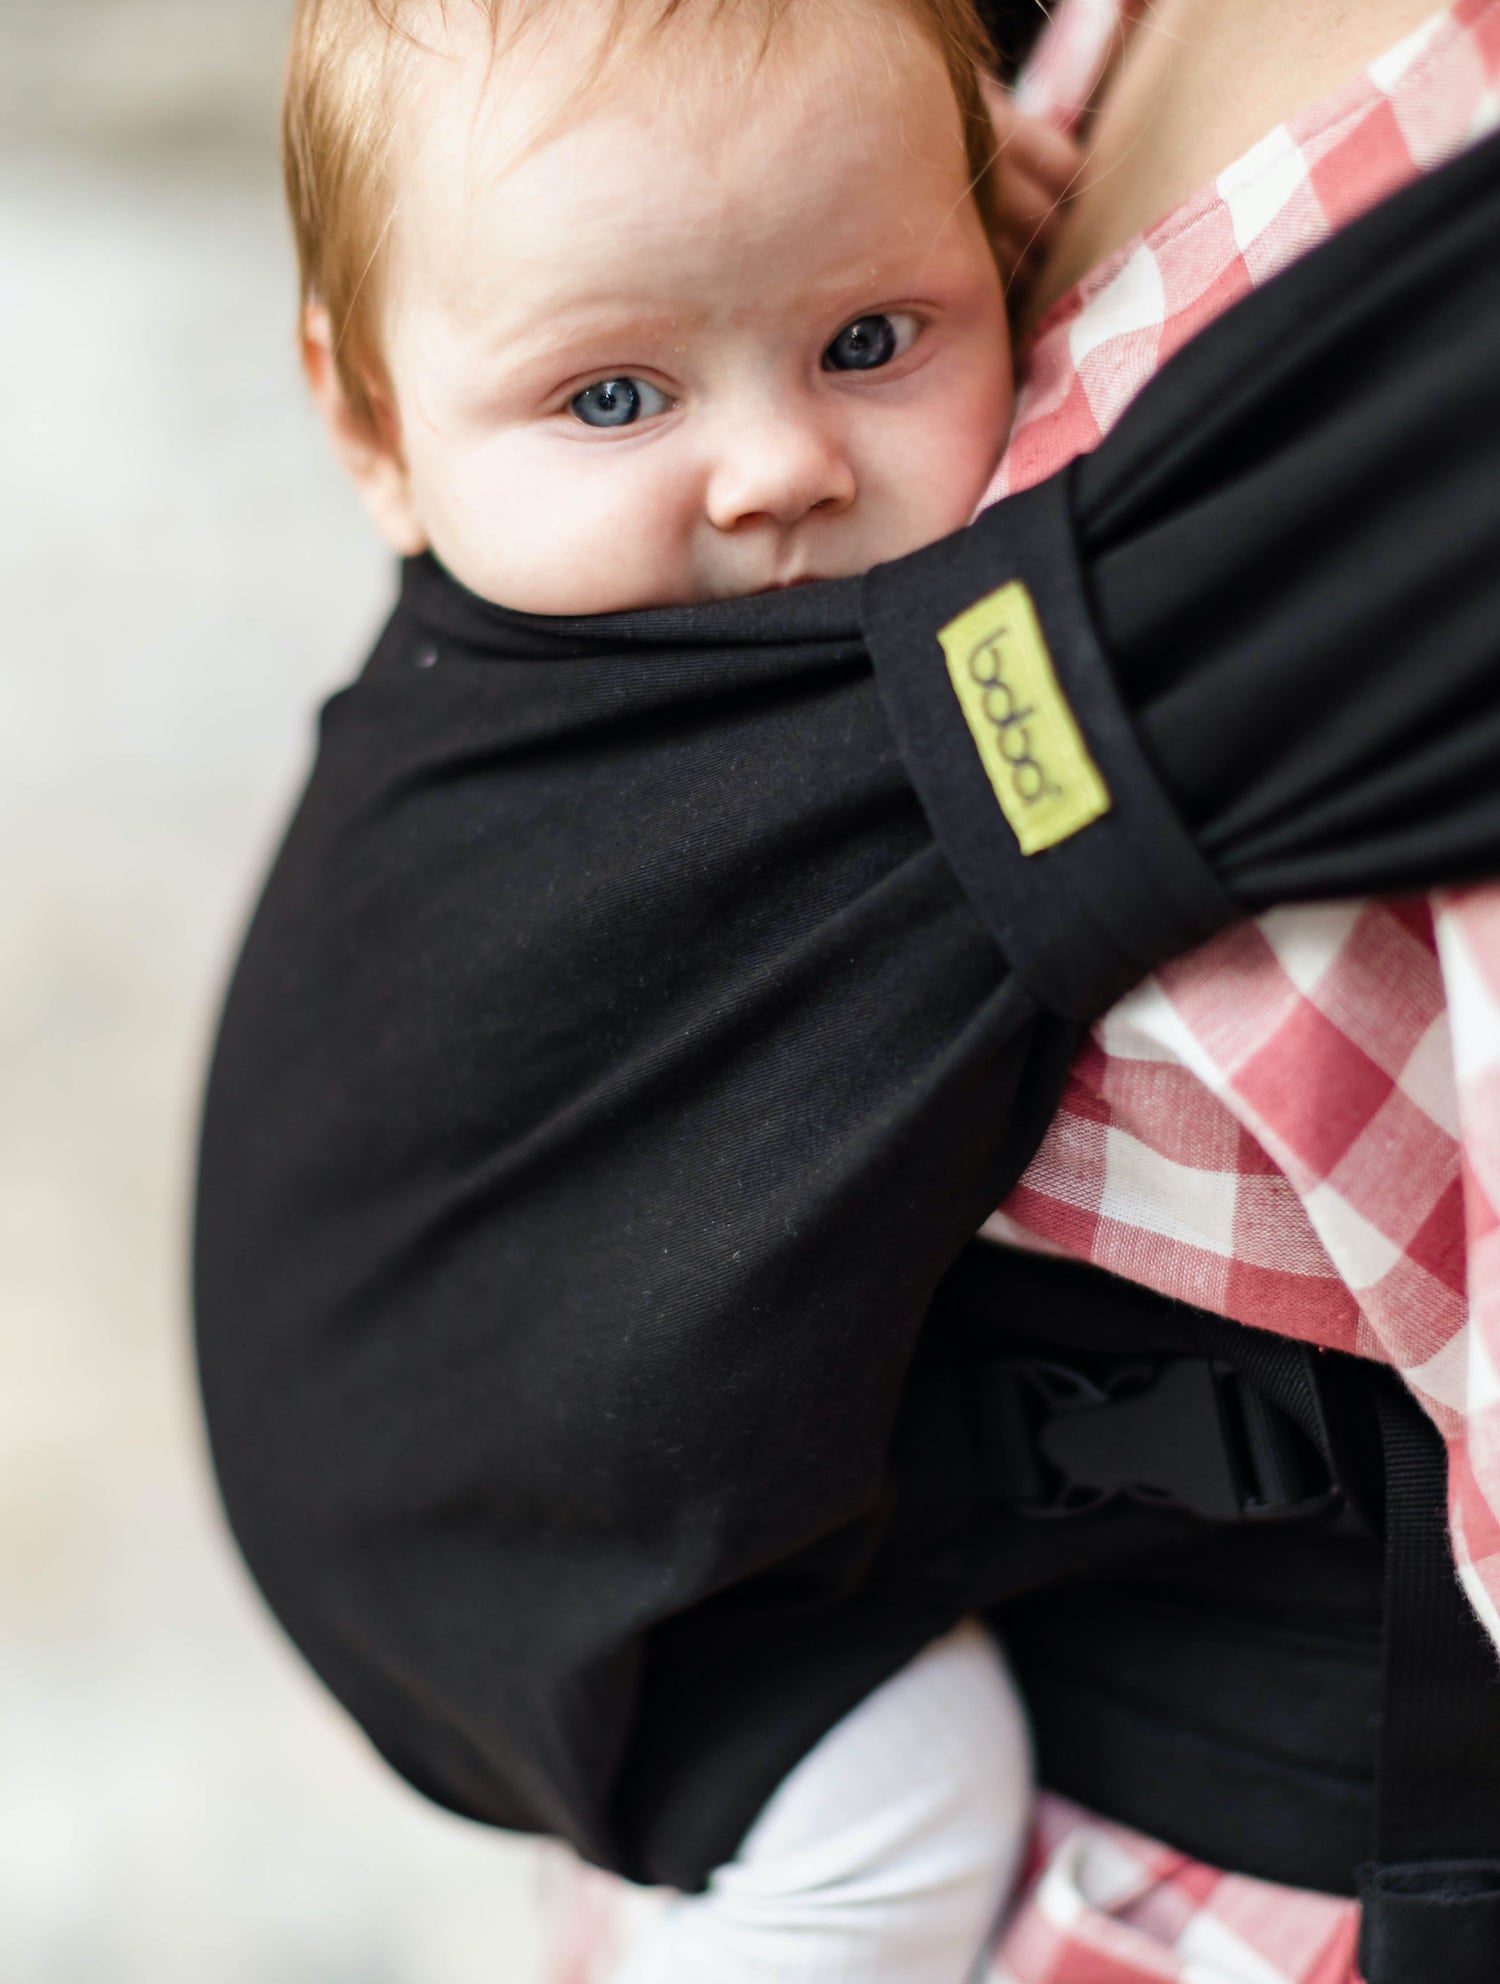 Boba Bliss Hybrid Baby Carrier in Black